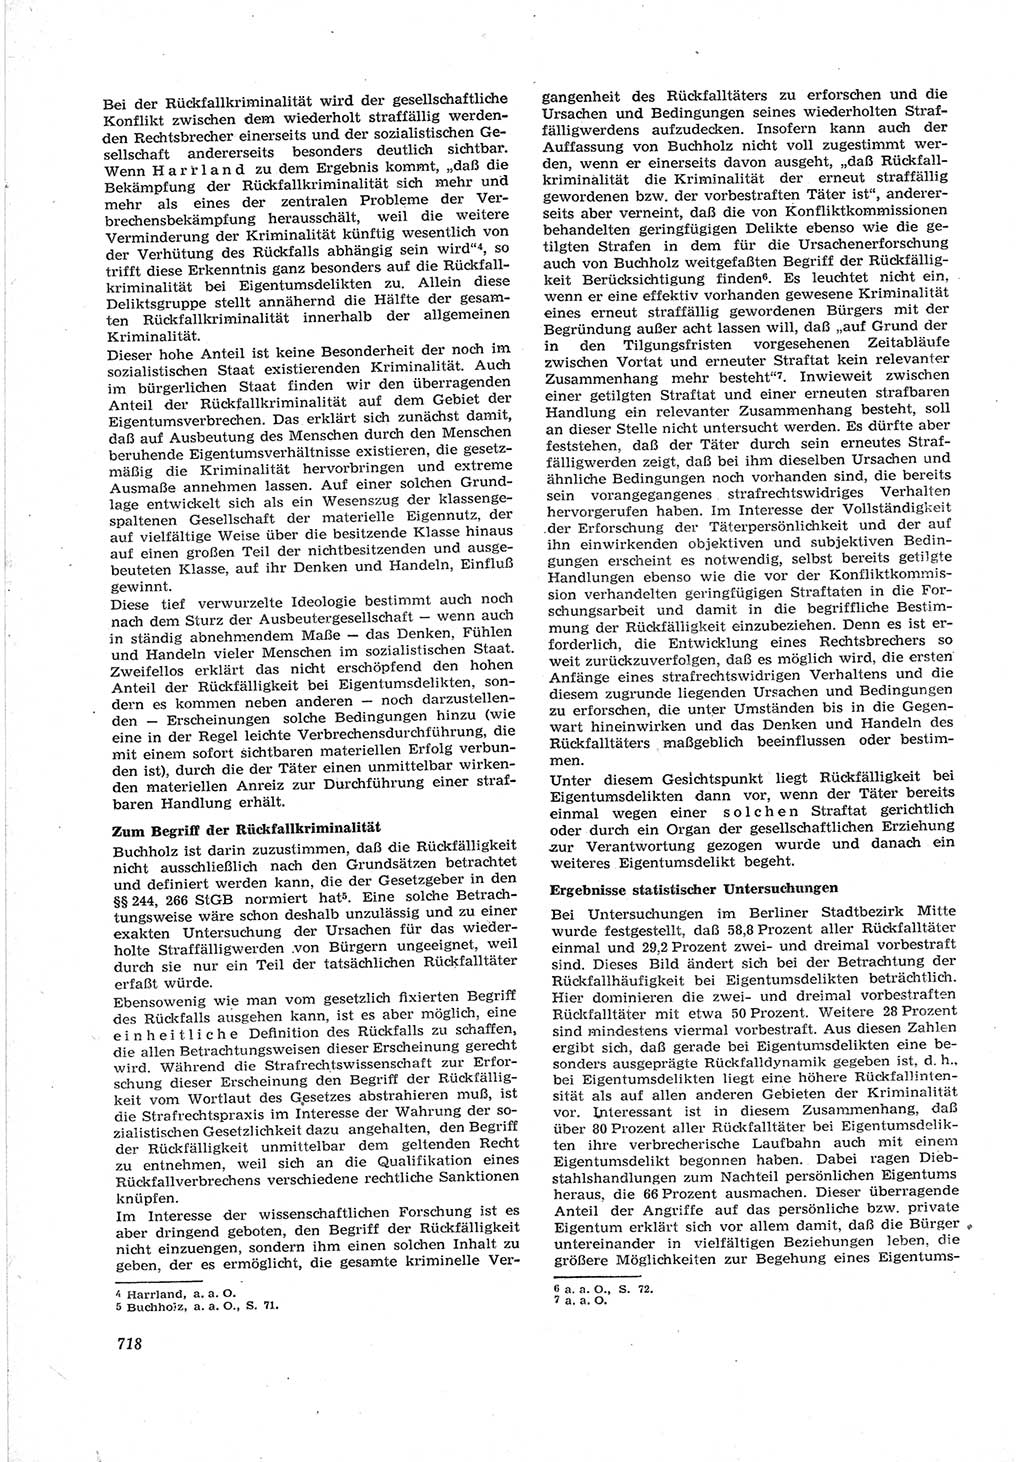 Neue Justiz (NJ), Zeitschrift für Recht und Rechtswissenschaft [Deutsche Demokratische Republik (DDR)], 17. Jahrgang 1963, Seite 718 (NJ DDR 1963, S. 718)